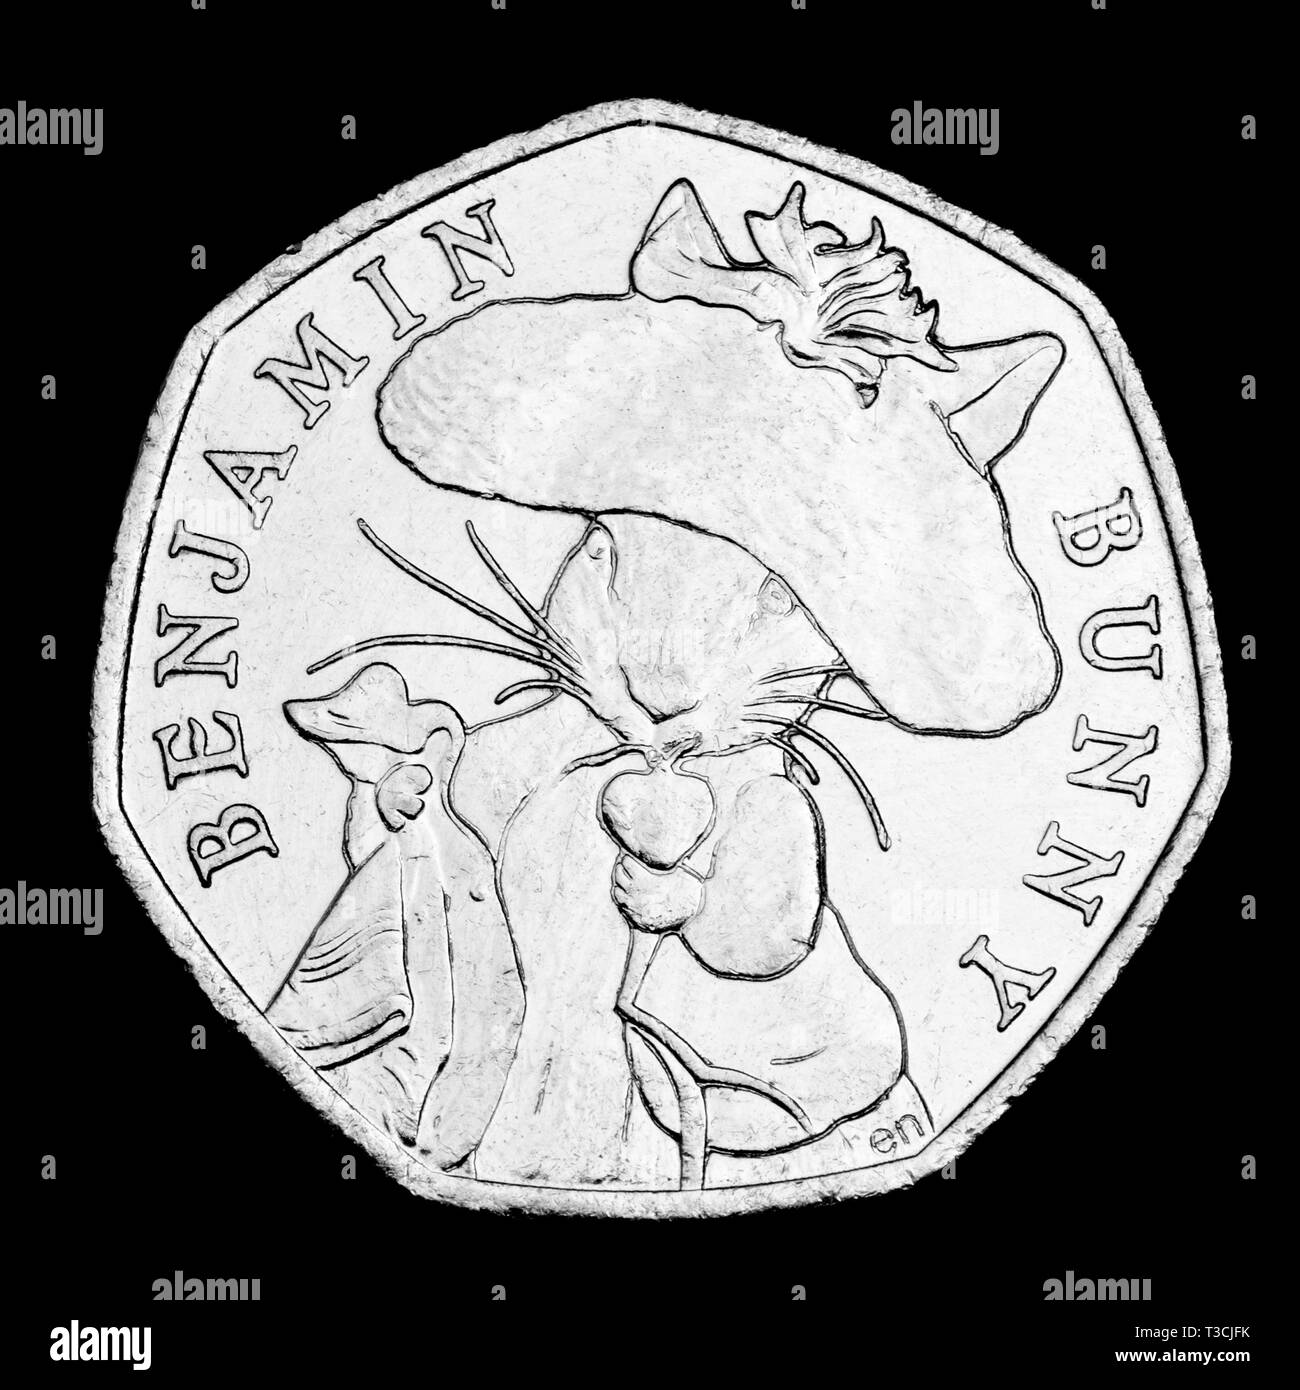 Británico 50p moneda conmemorativa. Conejito Benjamín Beatrix Potter (2017) Foto de stock